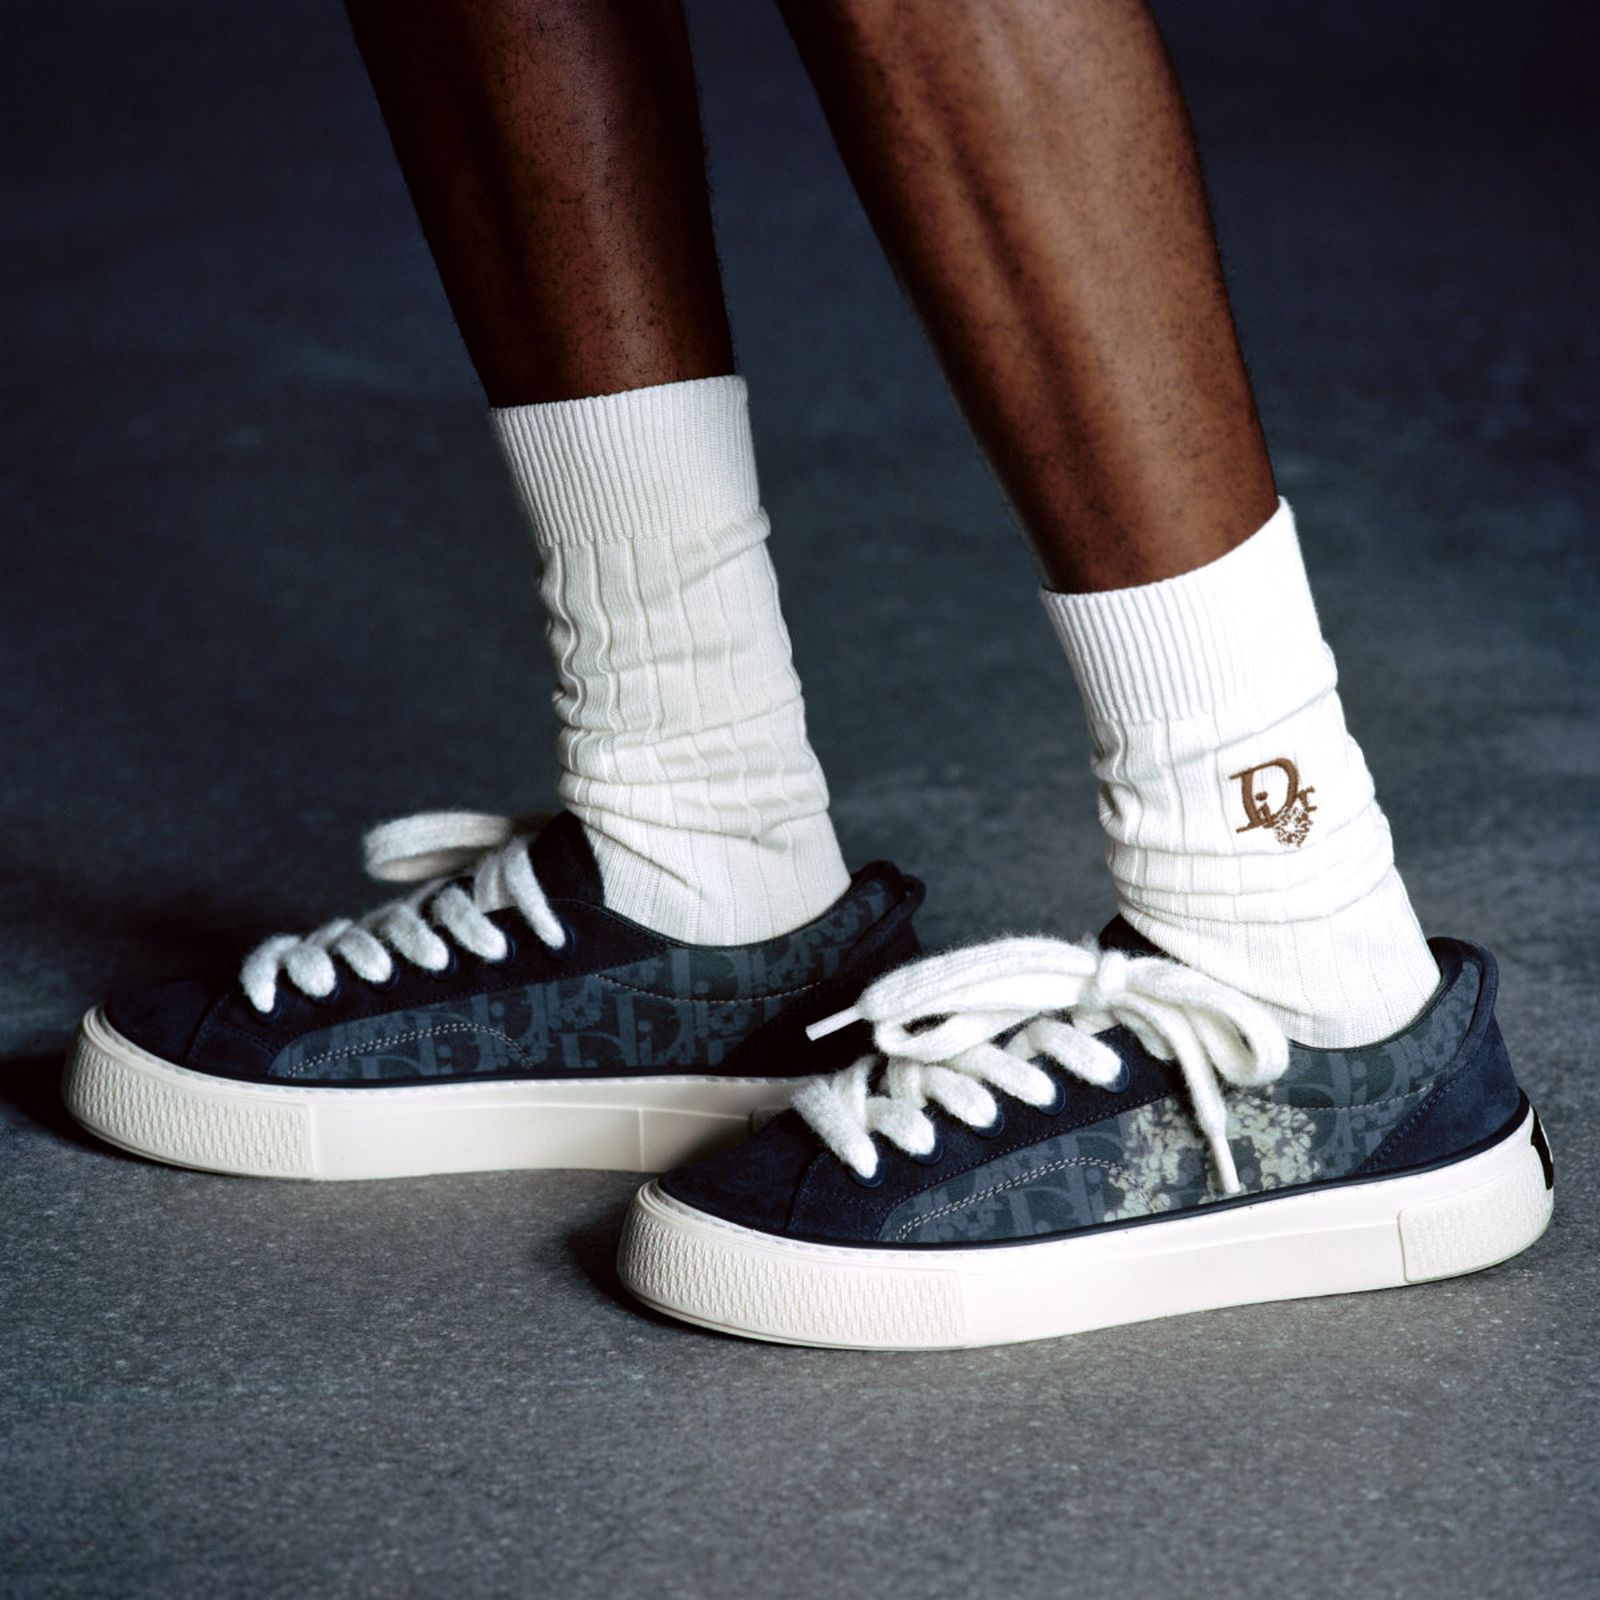 Dior & Denim Tears' B33 Sneakers Release Is Upon Us